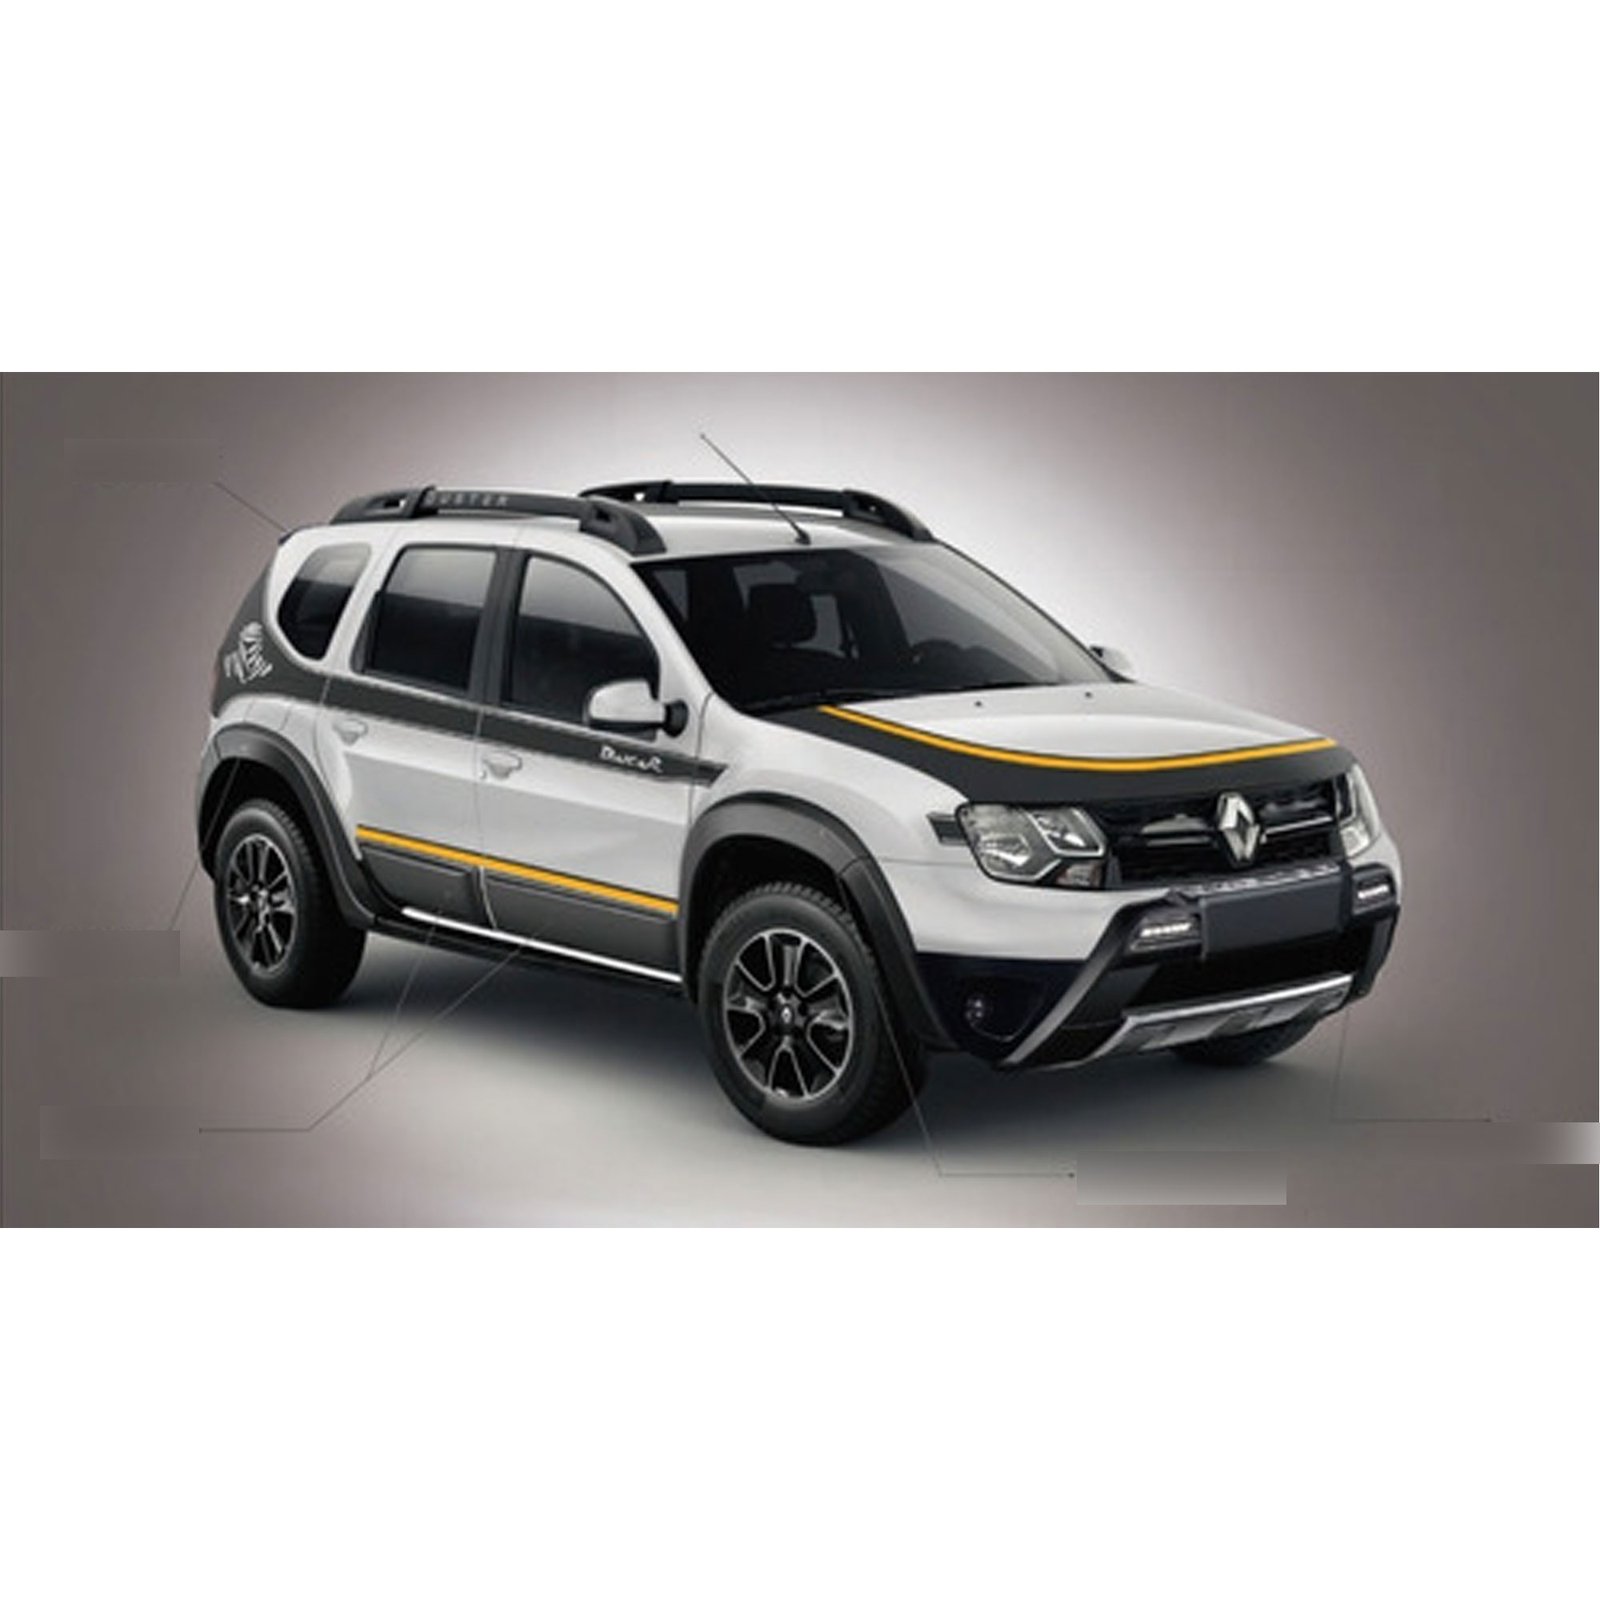 Juego de De Paneles Para Puerta para Renault Duster H79 (2012-2018)